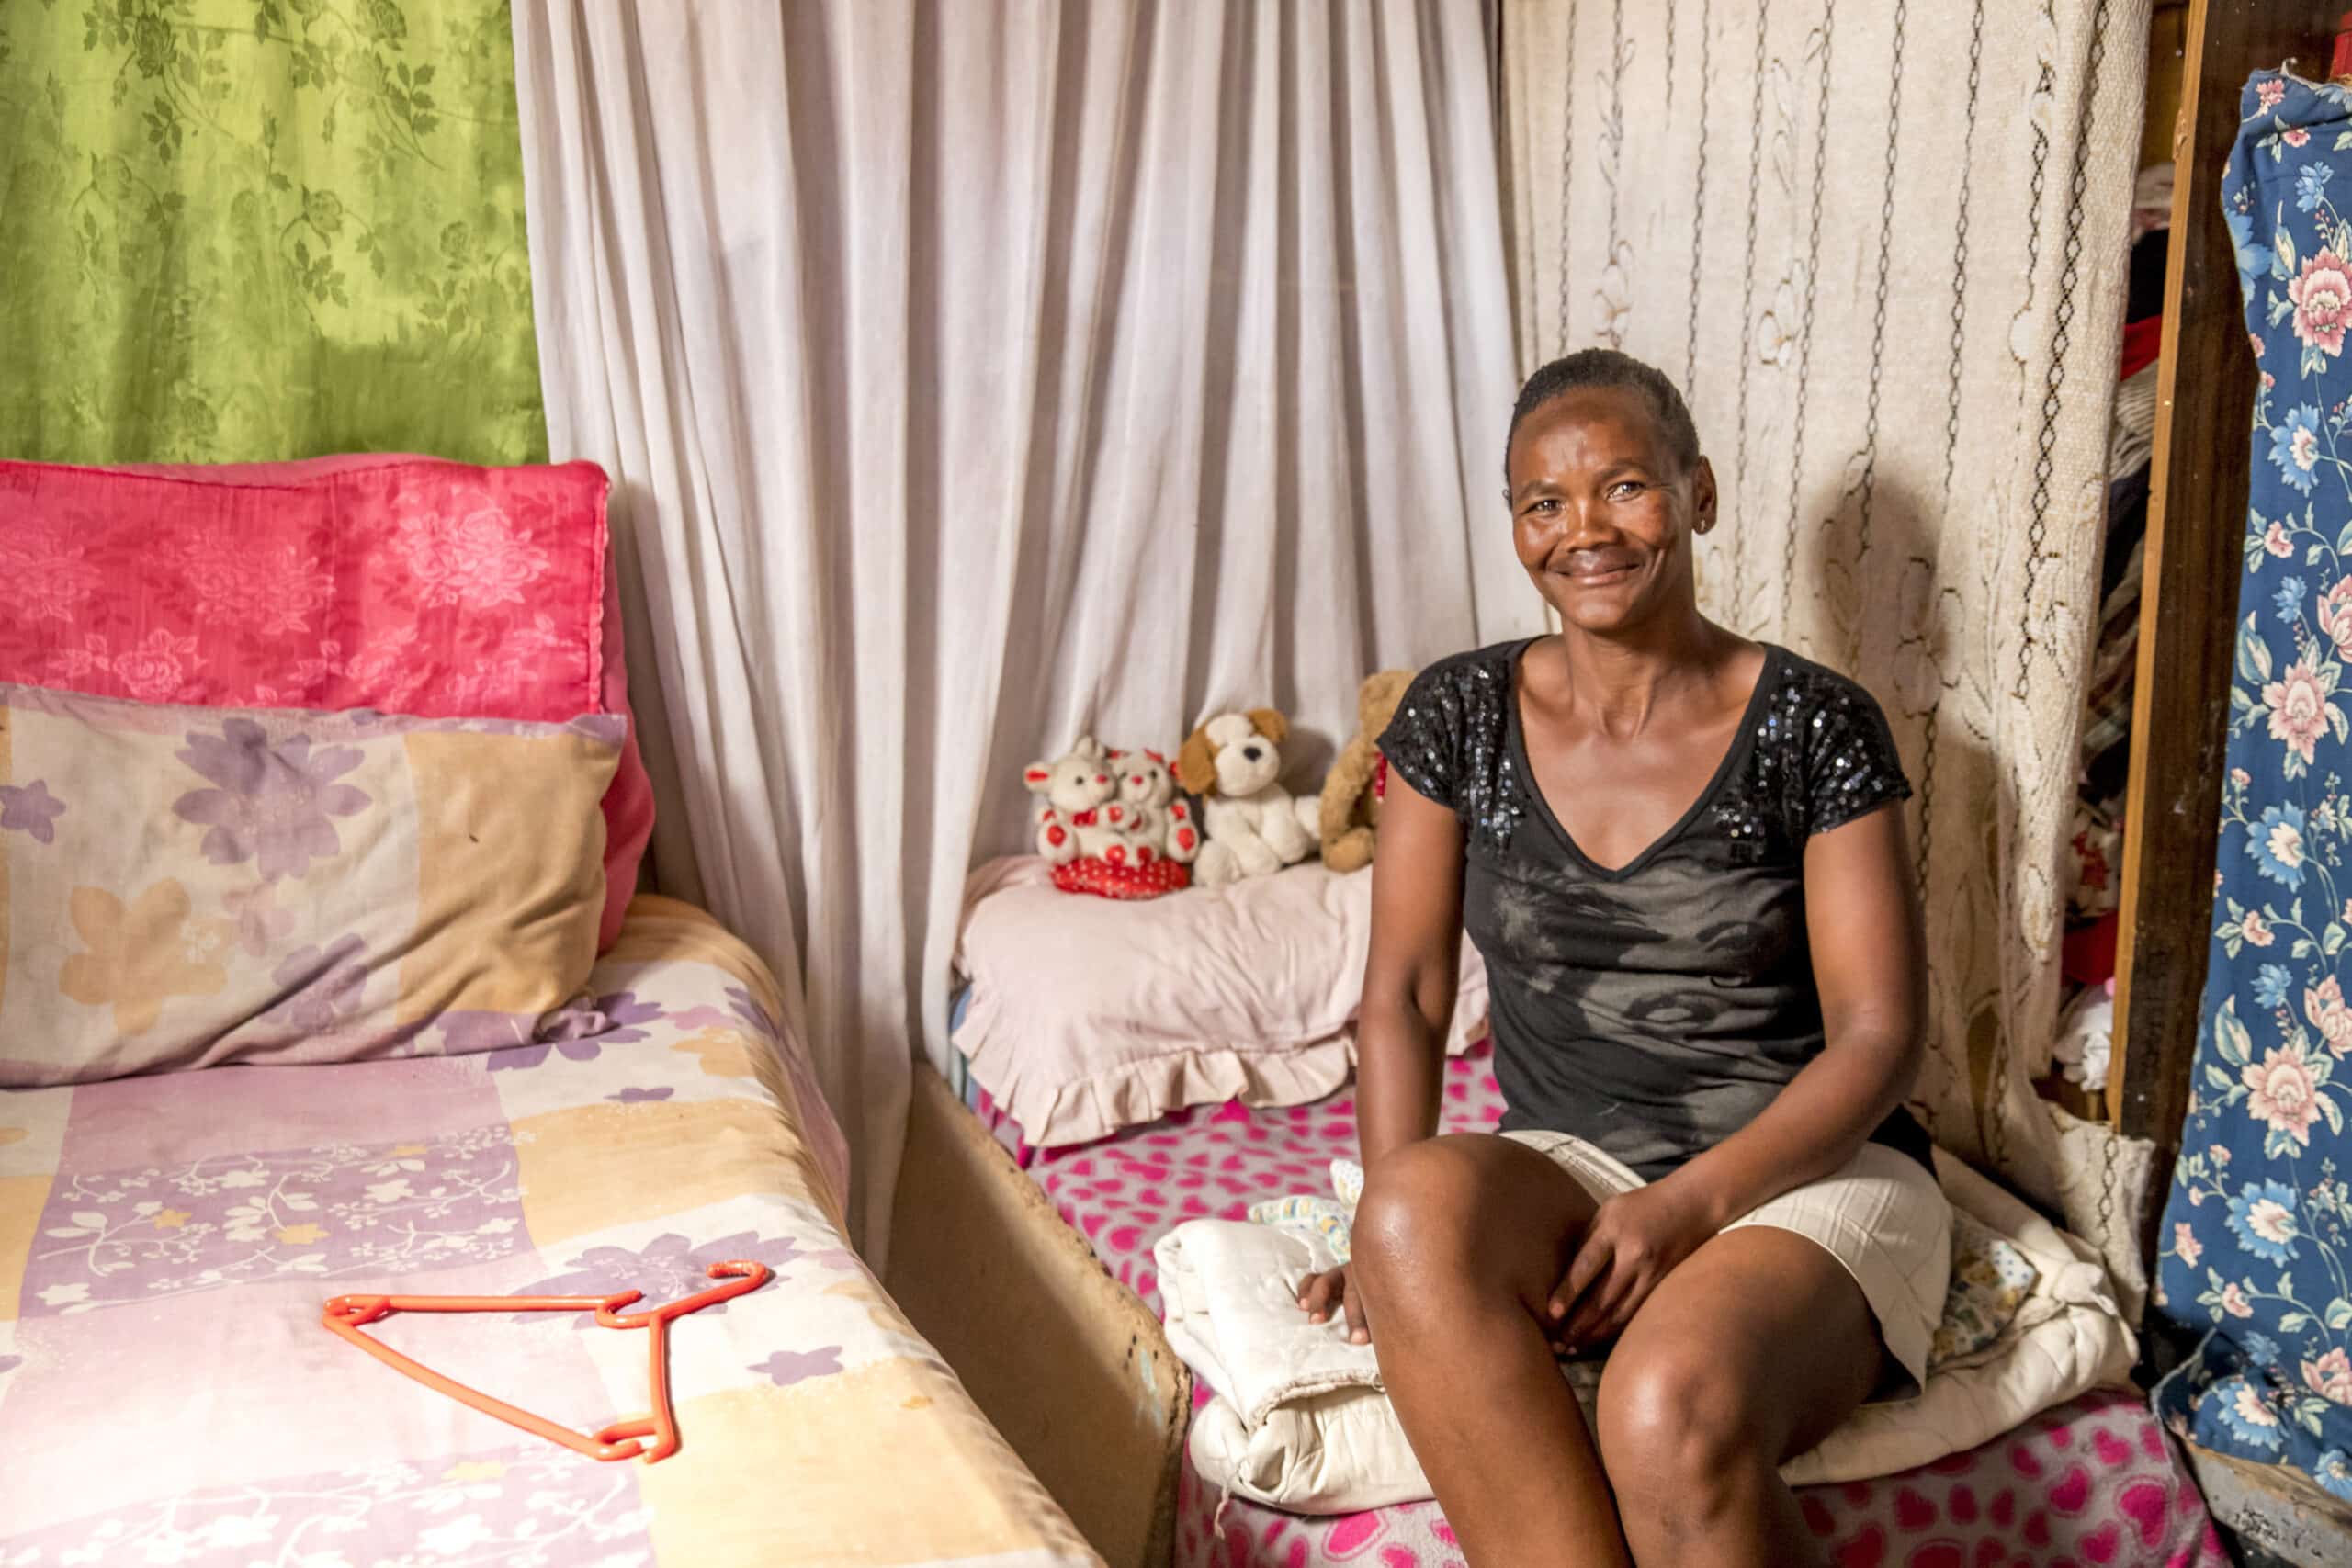 Eine Frau sitzt auf einem Bett in einem einfachen Zimmer mit bunten Vorhängen und Bettwäsche und lächelt in die Kamera. Ein kleiner Tisch und Teddybären sind ebenfalls zu sehen. © Fotografie Tomas Rodriguez